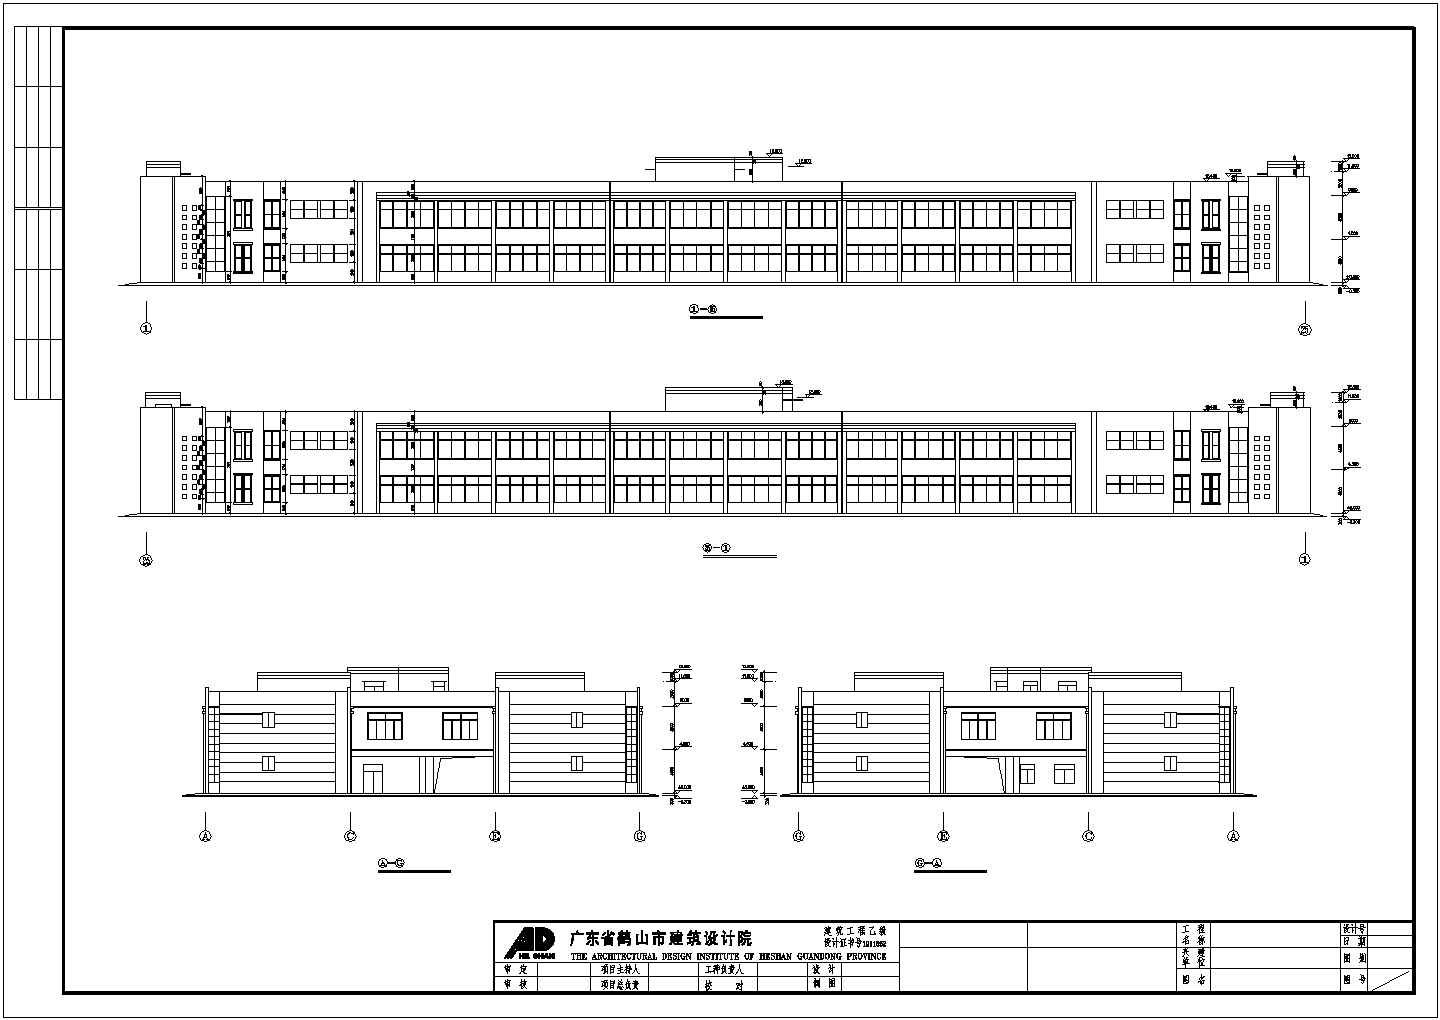 郑州市某服装厂2层加工车间全套建筑设计CAD图纸